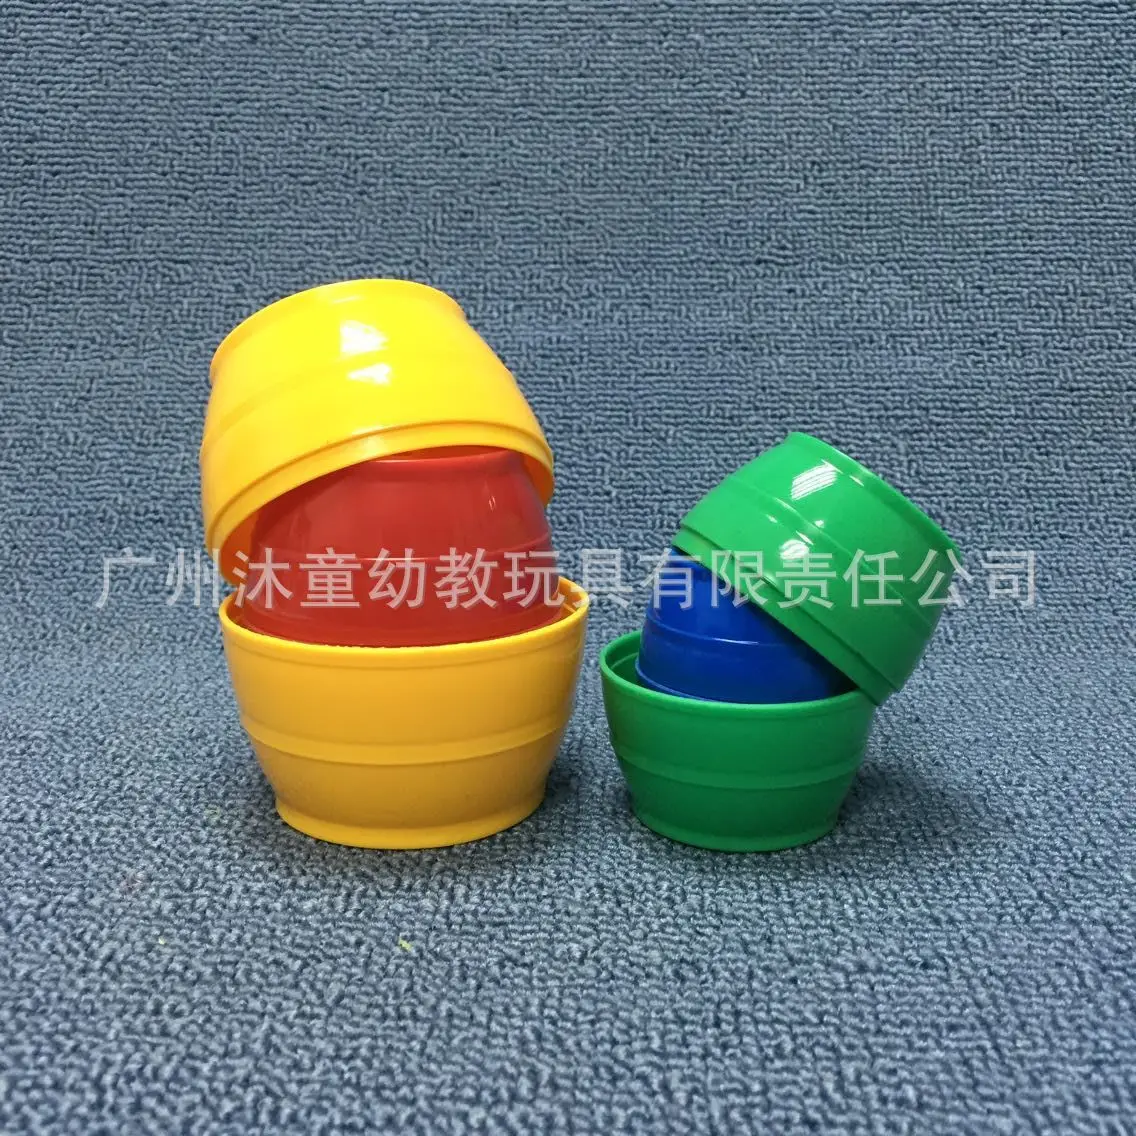 Фиксирующая чашка с рукавами, квадратный круглый бочонок, сложенные чашечки, цветной комплект для детей младшего возраста, образование для детей младшего возраста